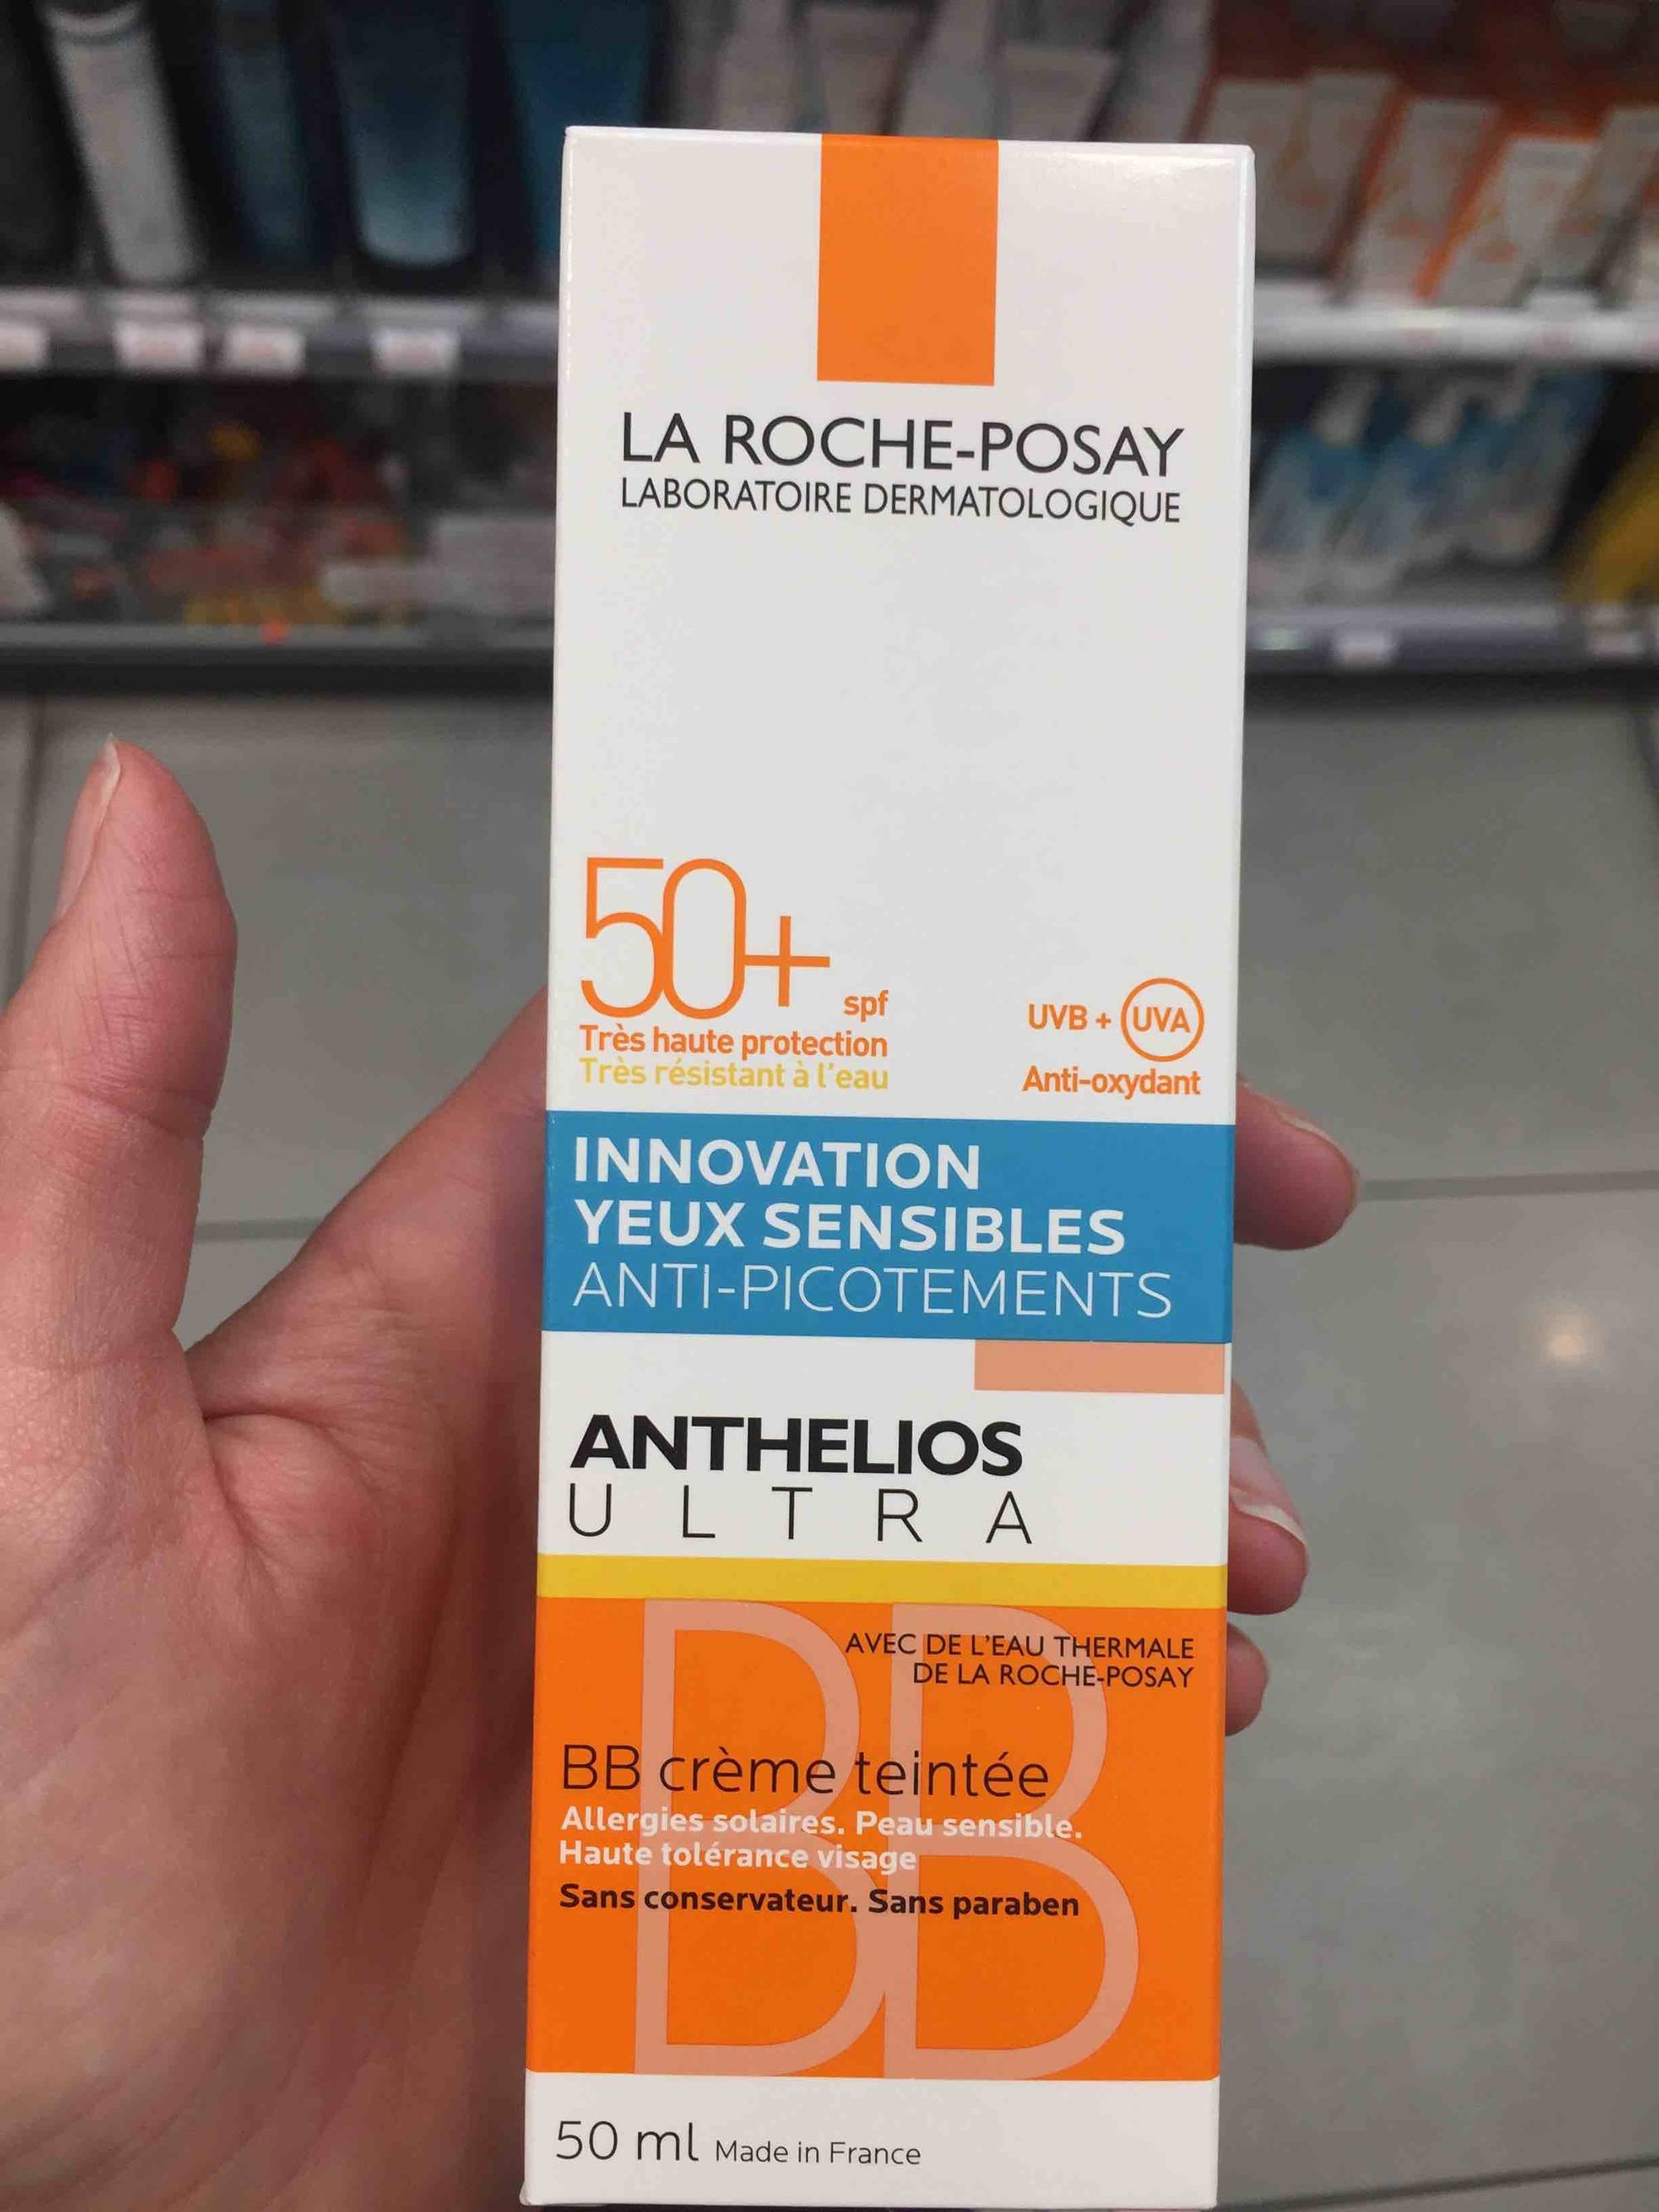 LA ROCHE-POSAY - Anthelios ultra - Innovation yeux sensibles - Anti-picotements - 50+ SPF - BB crème teintée